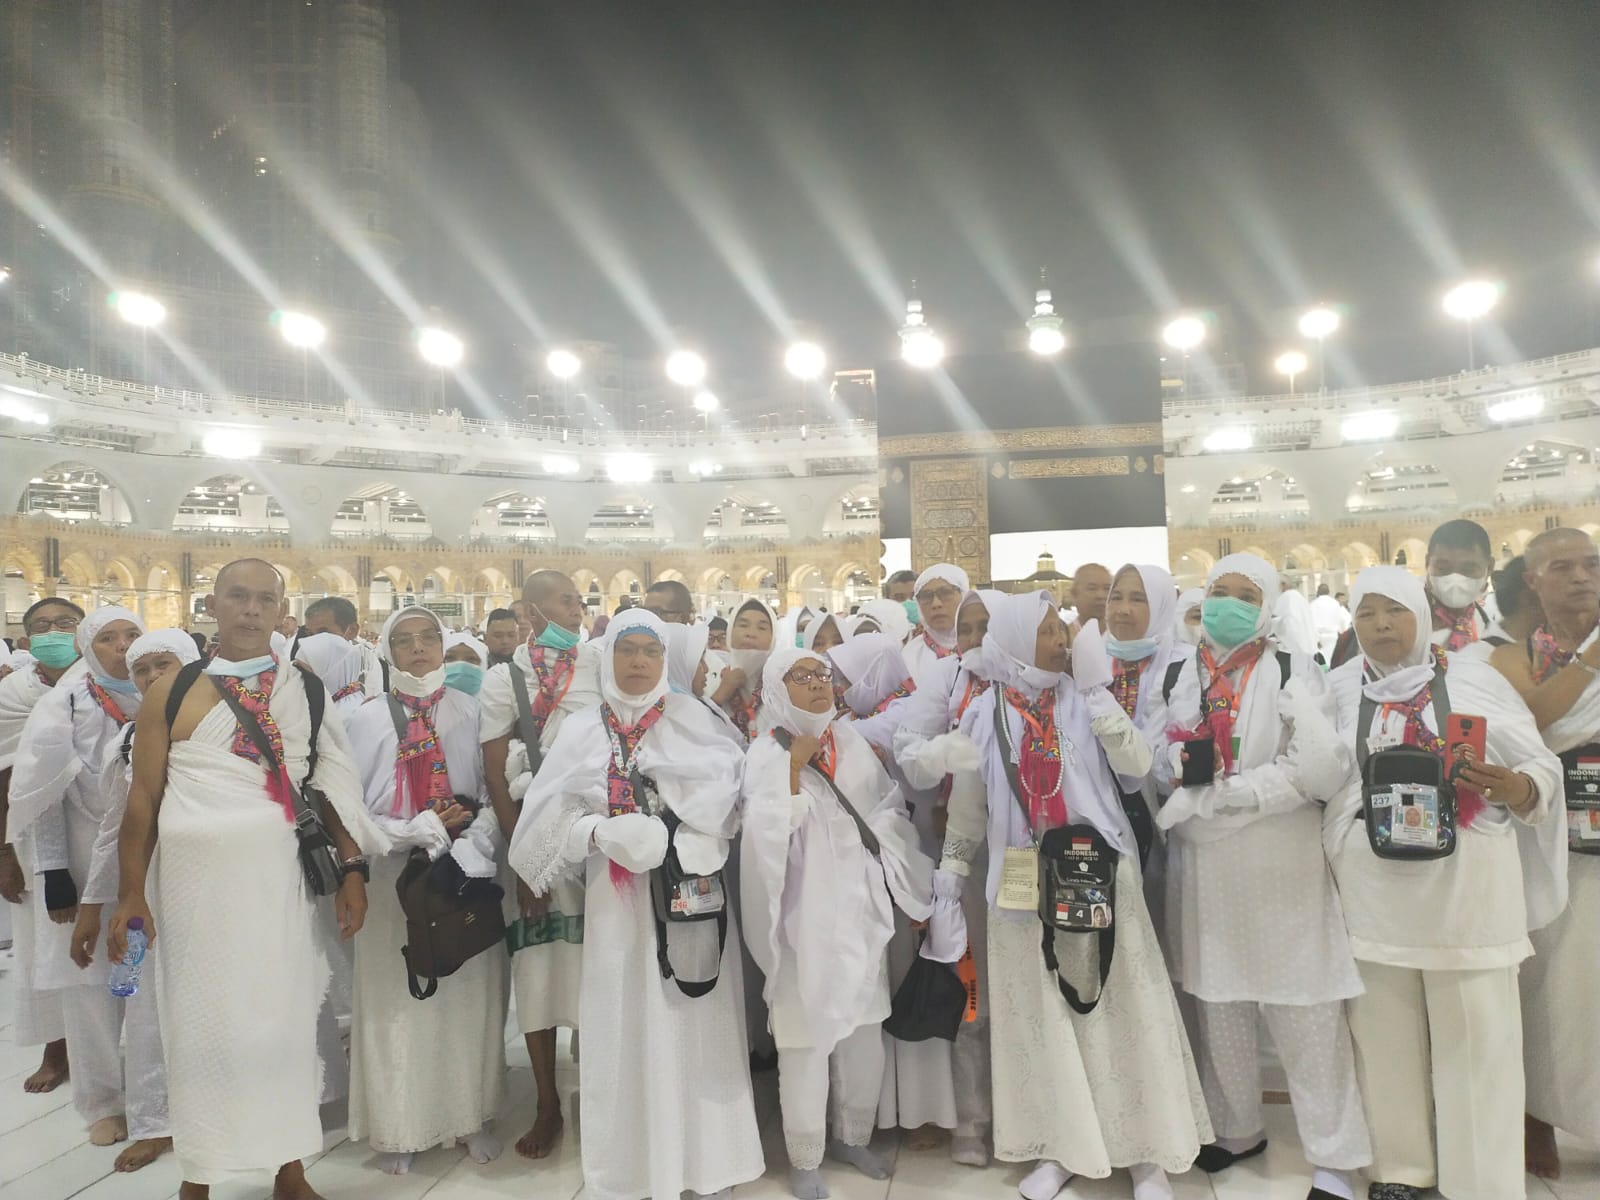 Pelunasan Biaya Haji Reguler Dibuka Mulai 11 April Hingga 5 Mei, Cek Ongkosnya di Sini  